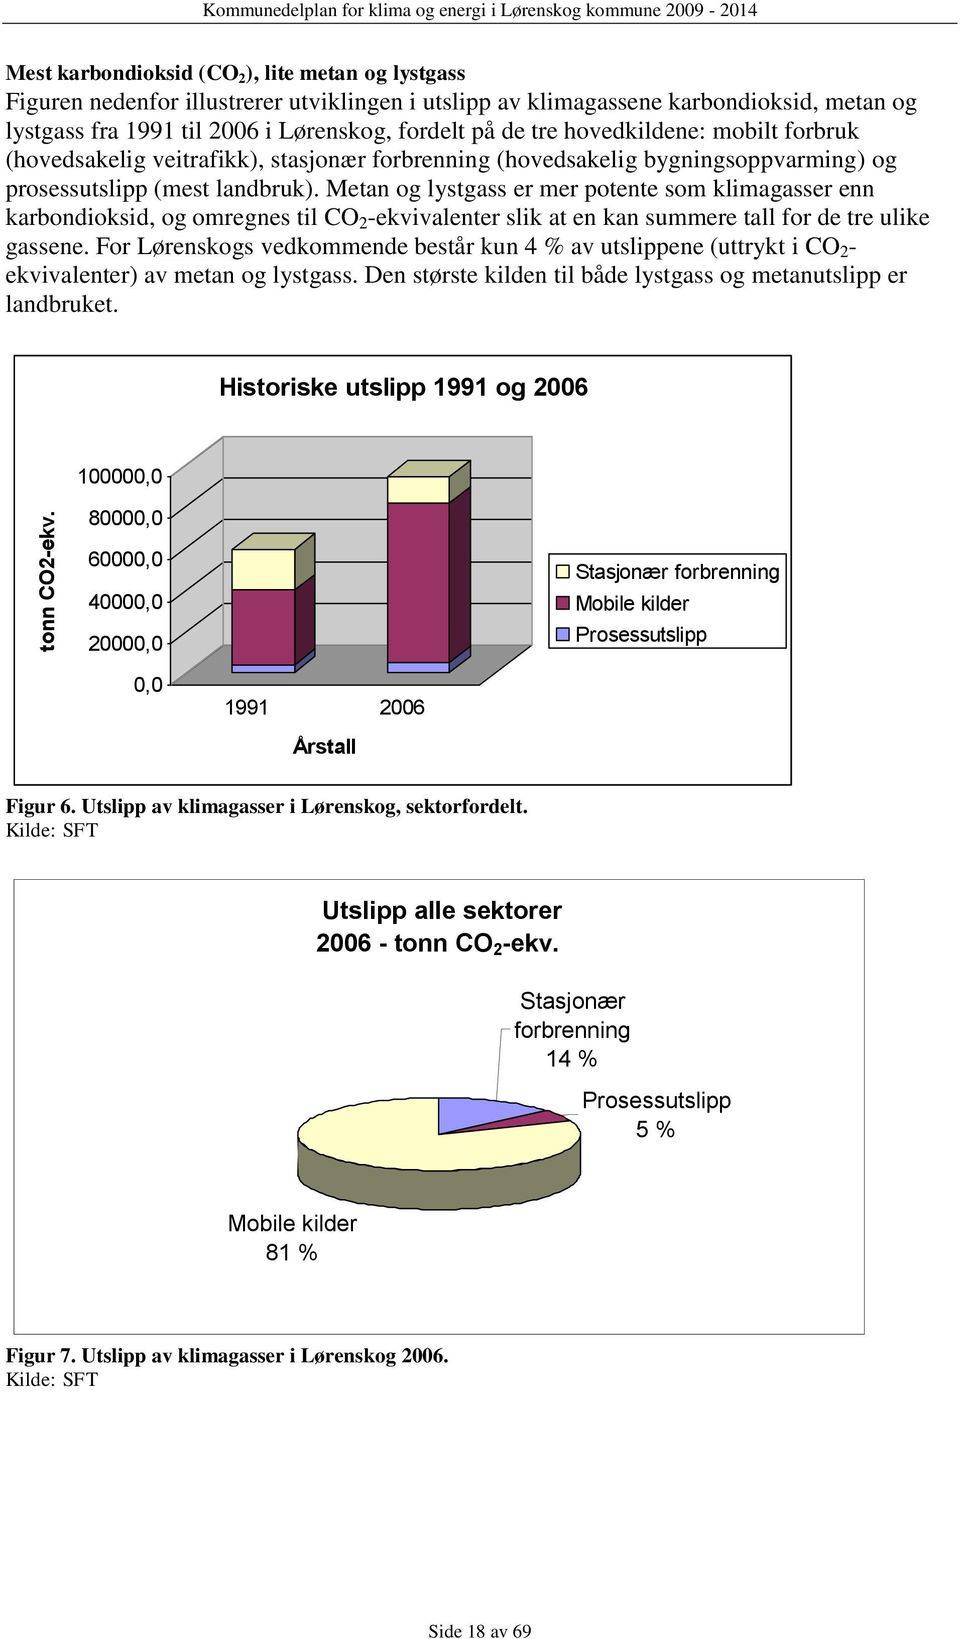 metan og lystgass fra 1991 til 2006 i Lørenskog, fordelt på de tre hovedkildene: mobilt forbruk (hovedsakelig veitrafikk), stasjonær forbrenning (hovedsakelig bygningsoppvarming) og prosessutslipp